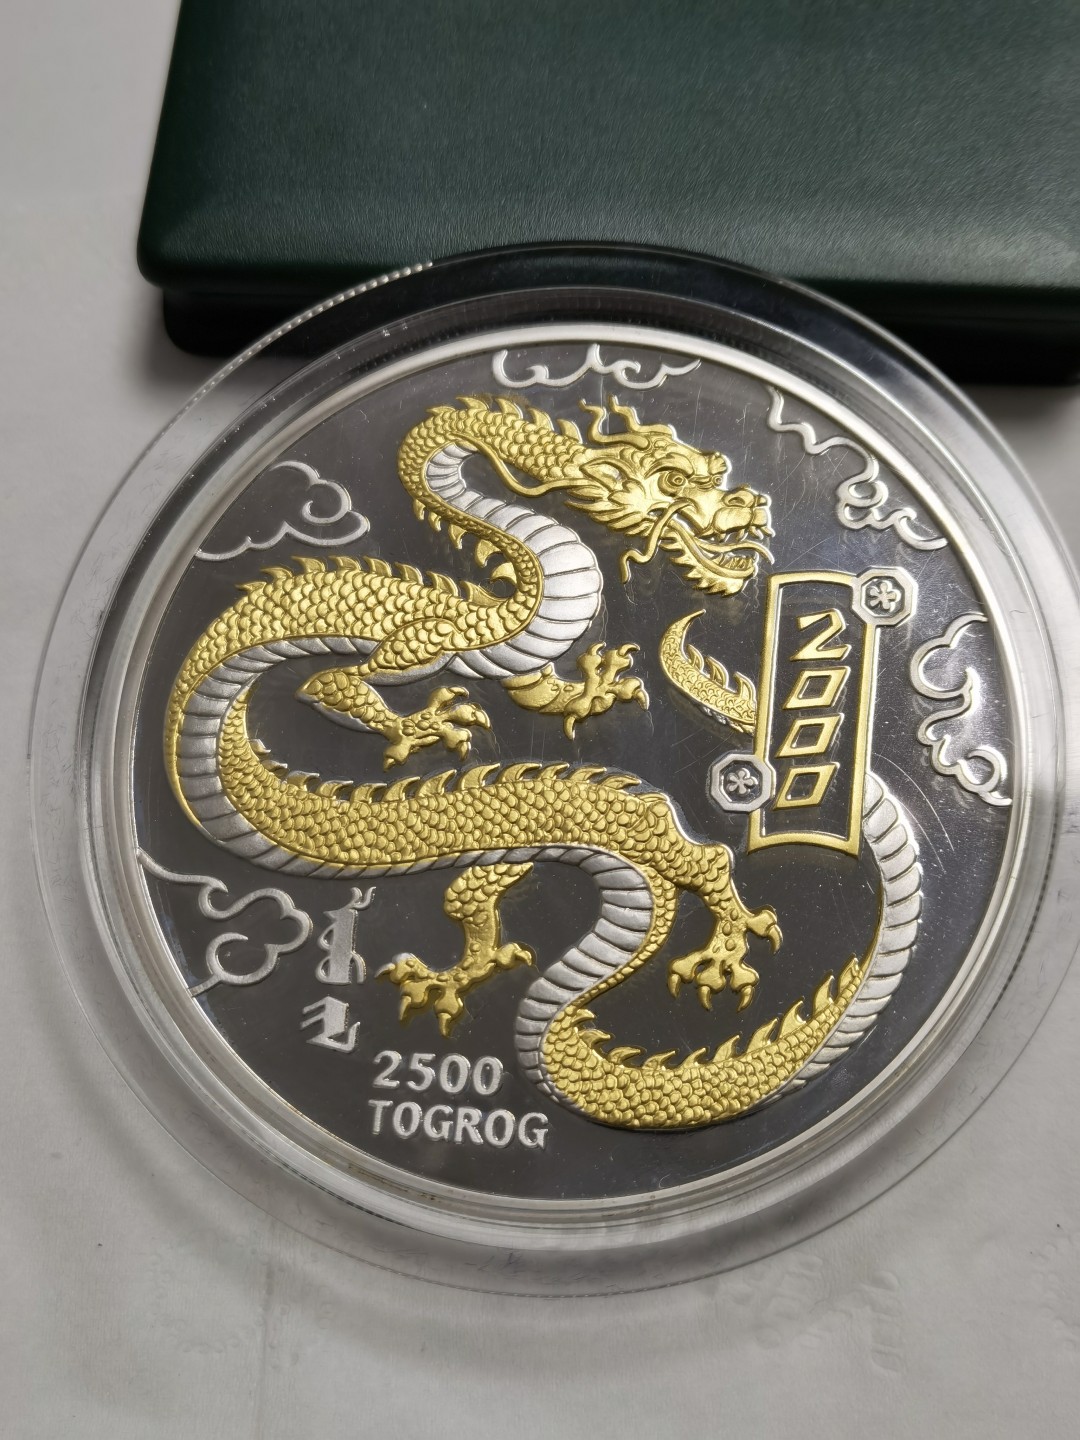 【海寧潮】蒙古2000年生肖龙5盎司镀金纪念银币